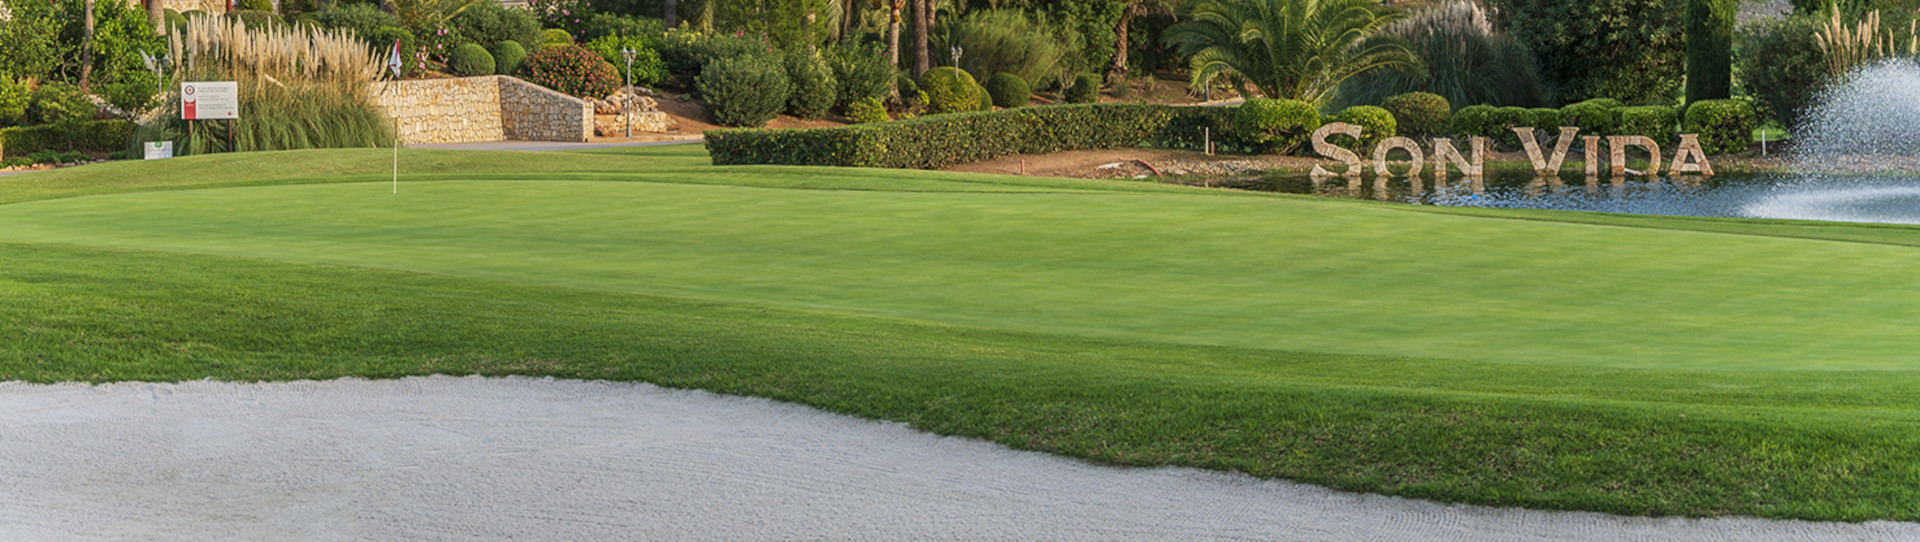 Spain golf courses - Son Vida Golf Course - Photo 1